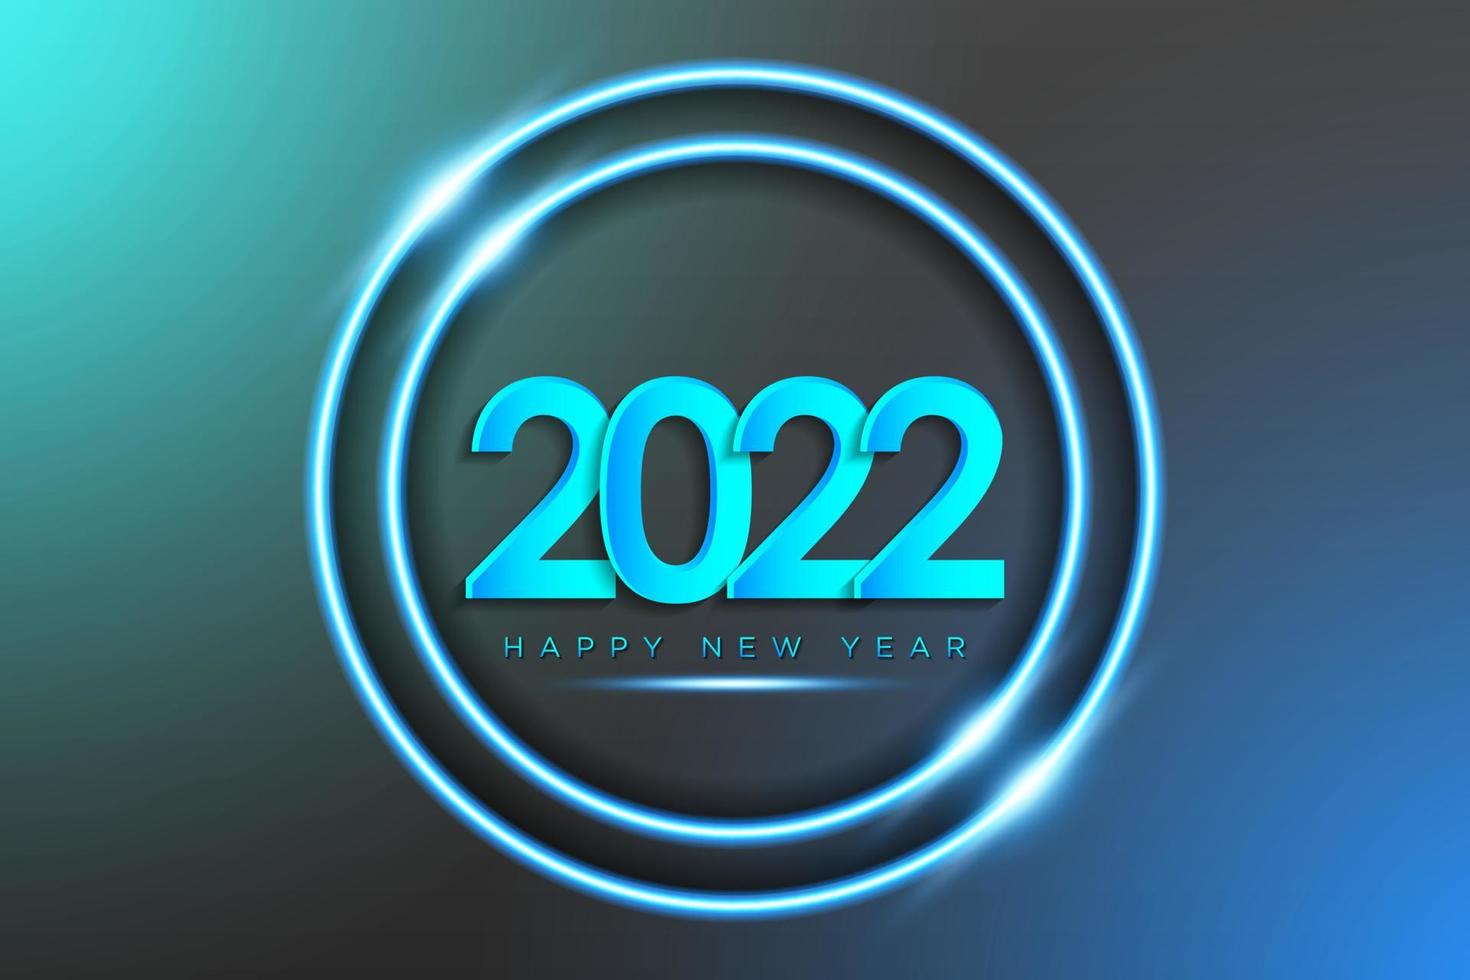 gelukkig nieuwjaar 2022 achtergrond in realistische neonlichtstijl rond frame met glanzend effect voor wenskaart, poster, banner. vectorillustratie. vector